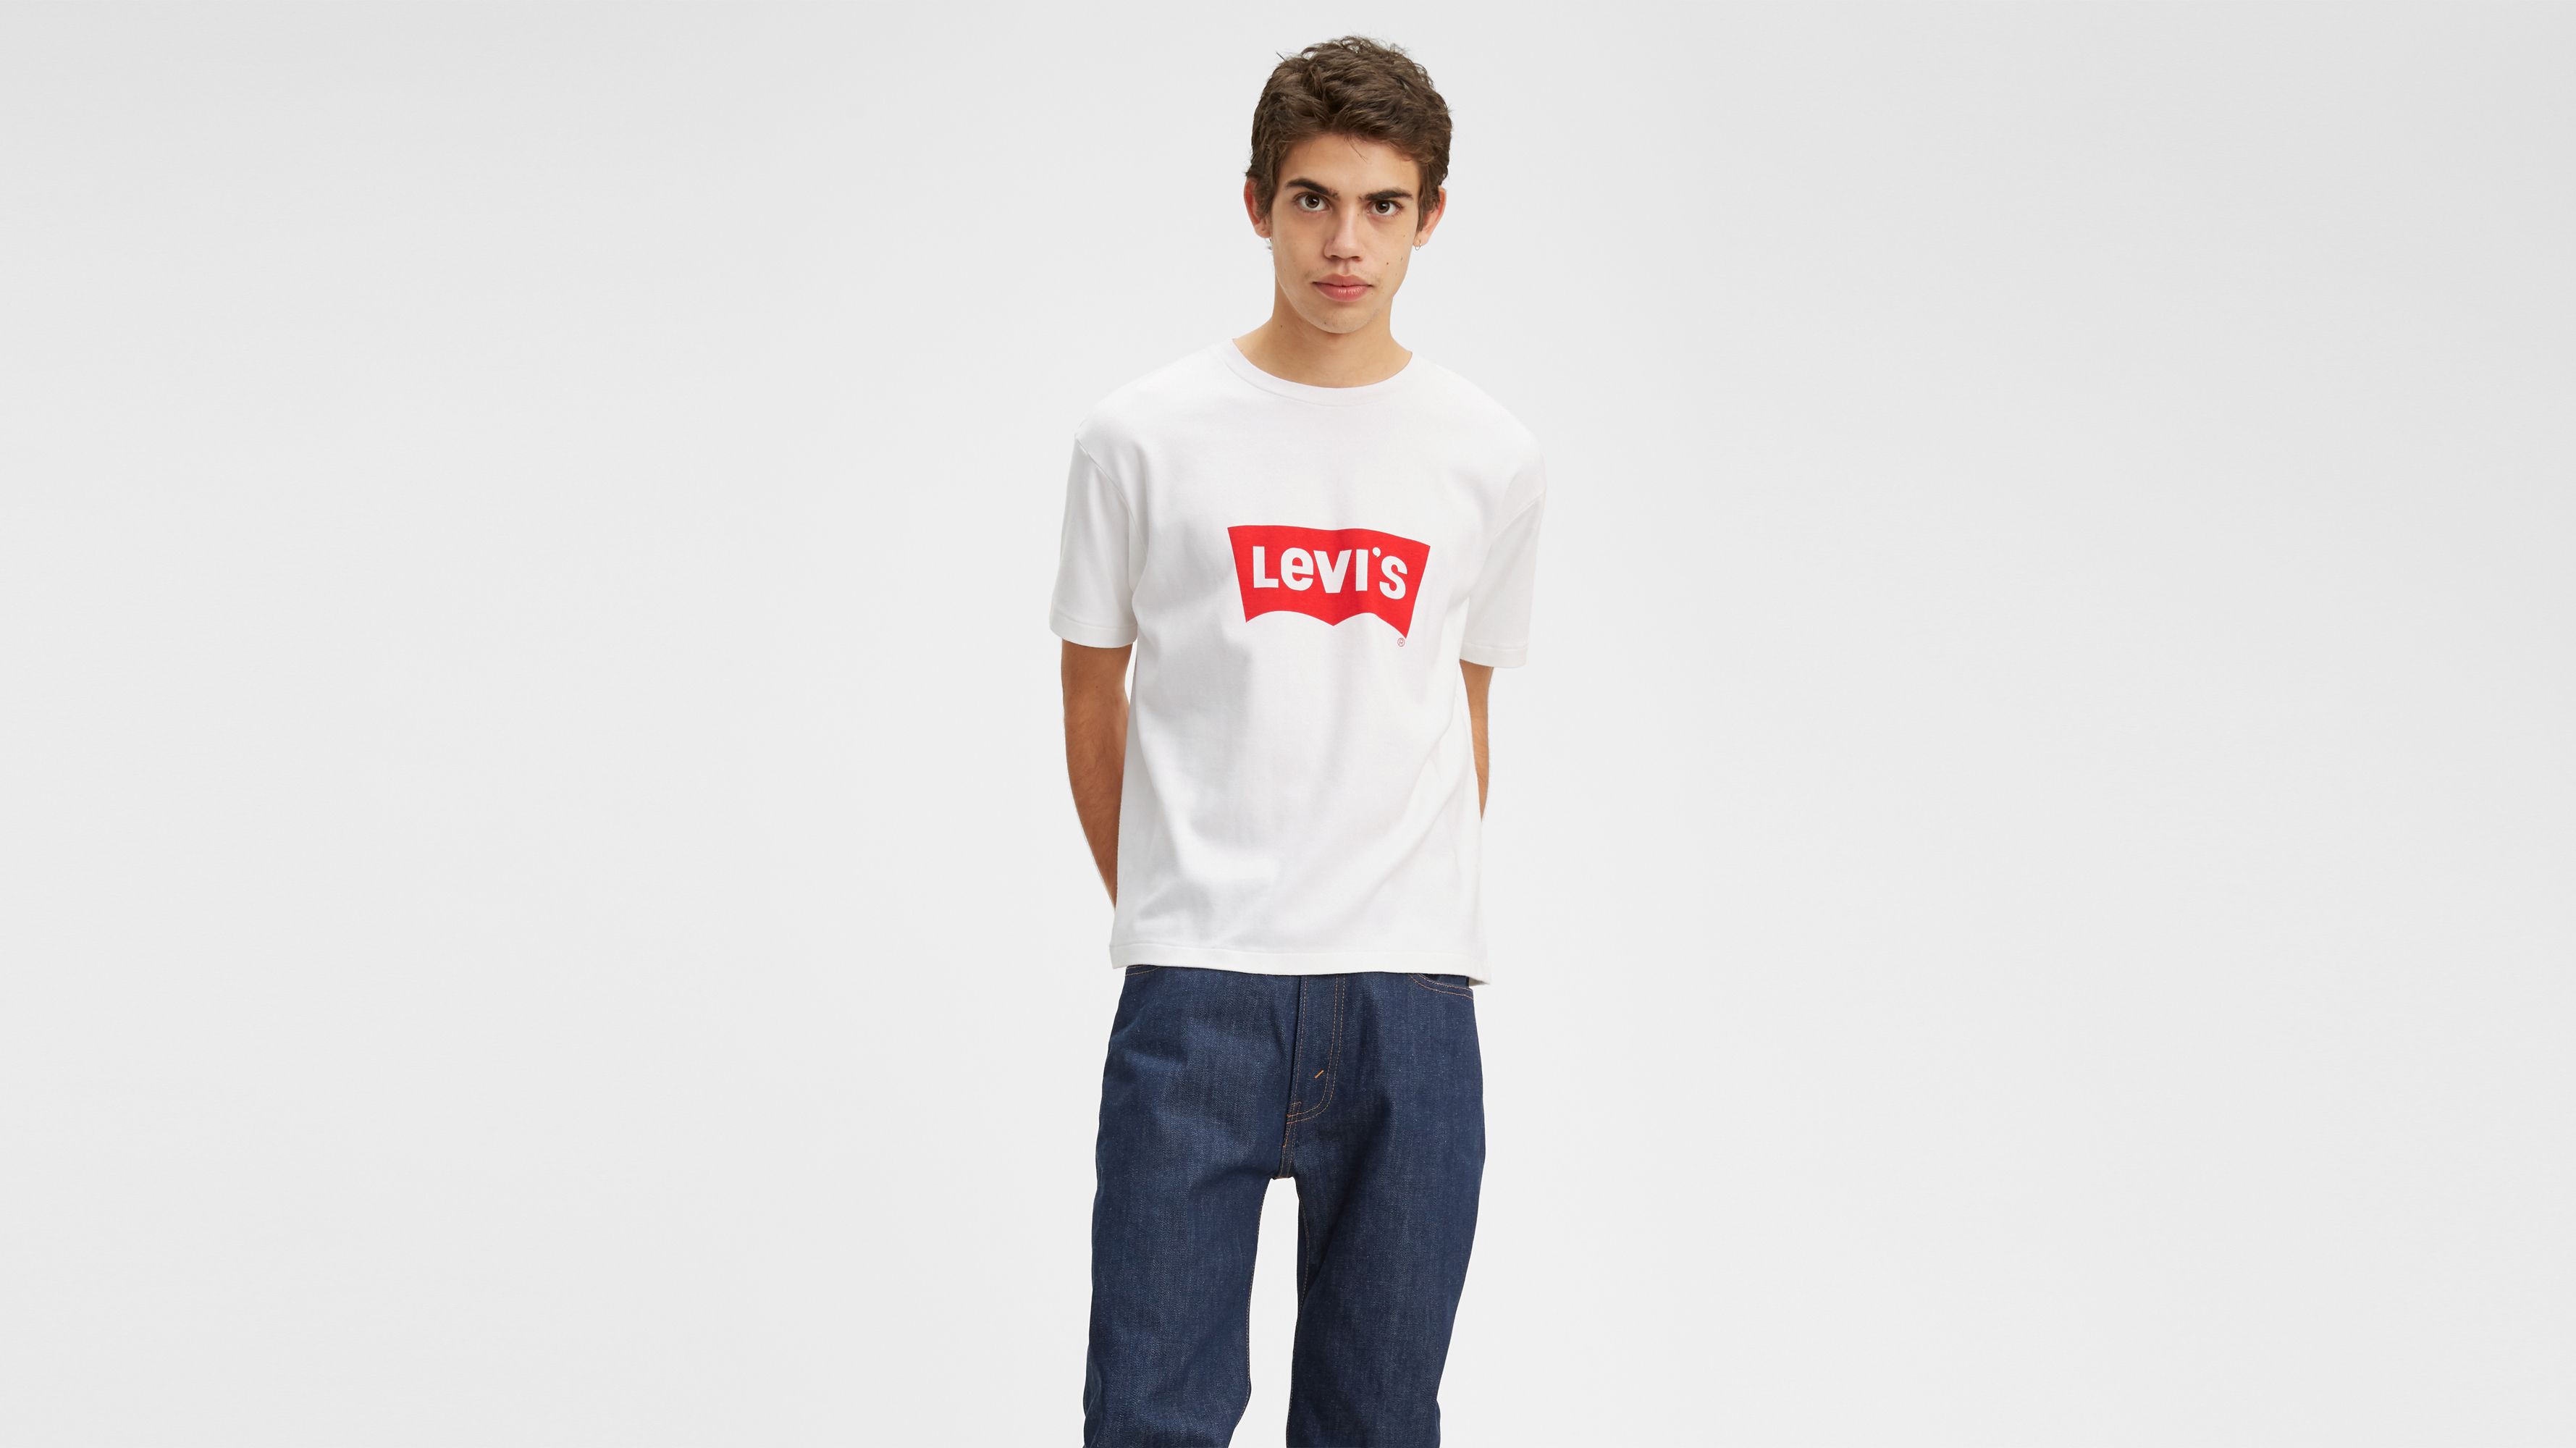 levis jeans t shirt